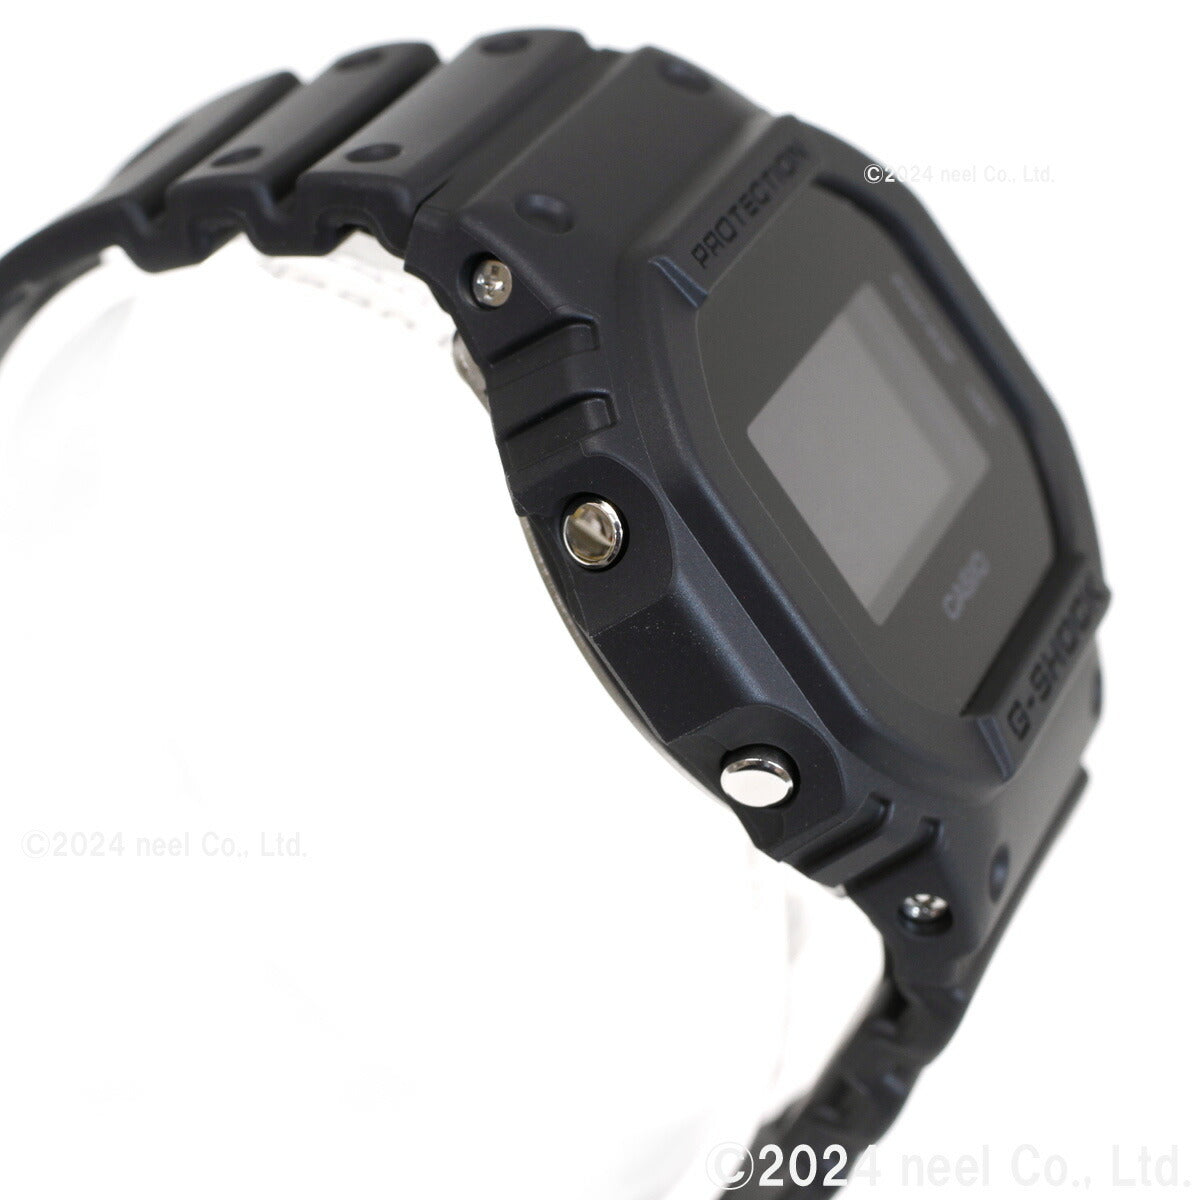 G-SHOCK デジタル カシオ Gショック CASIO 限定モデル 腕時計 メンズ DW-5600UBB-1JF LEDバックライト